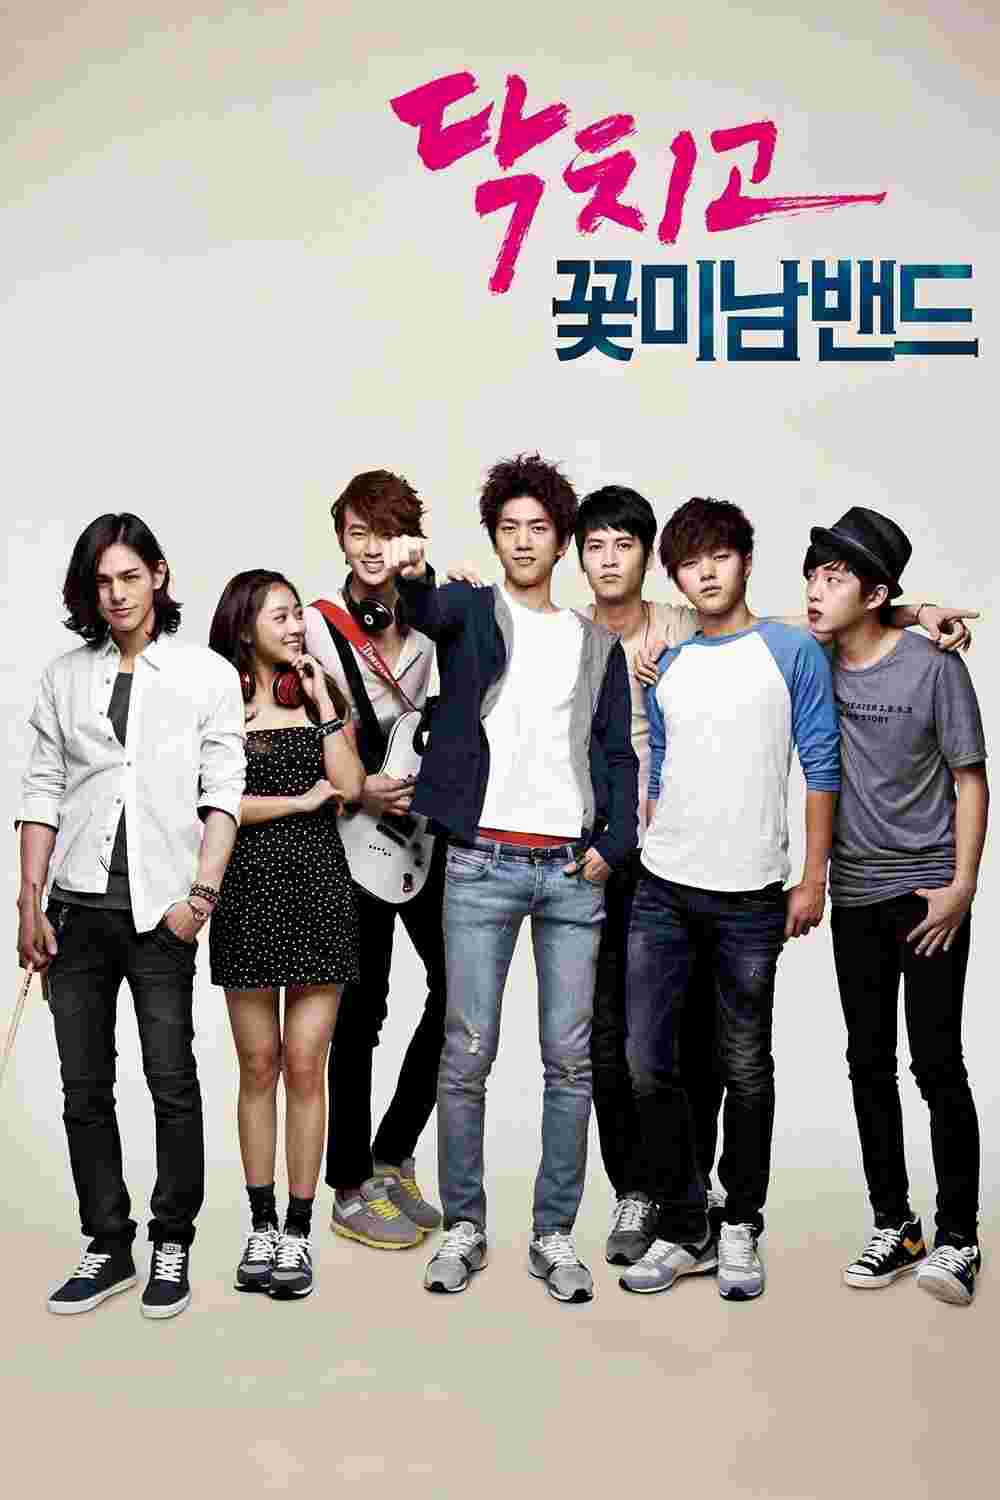 Shut Up Flower Boy Band (TV Series 2012–2012) Sung Jun